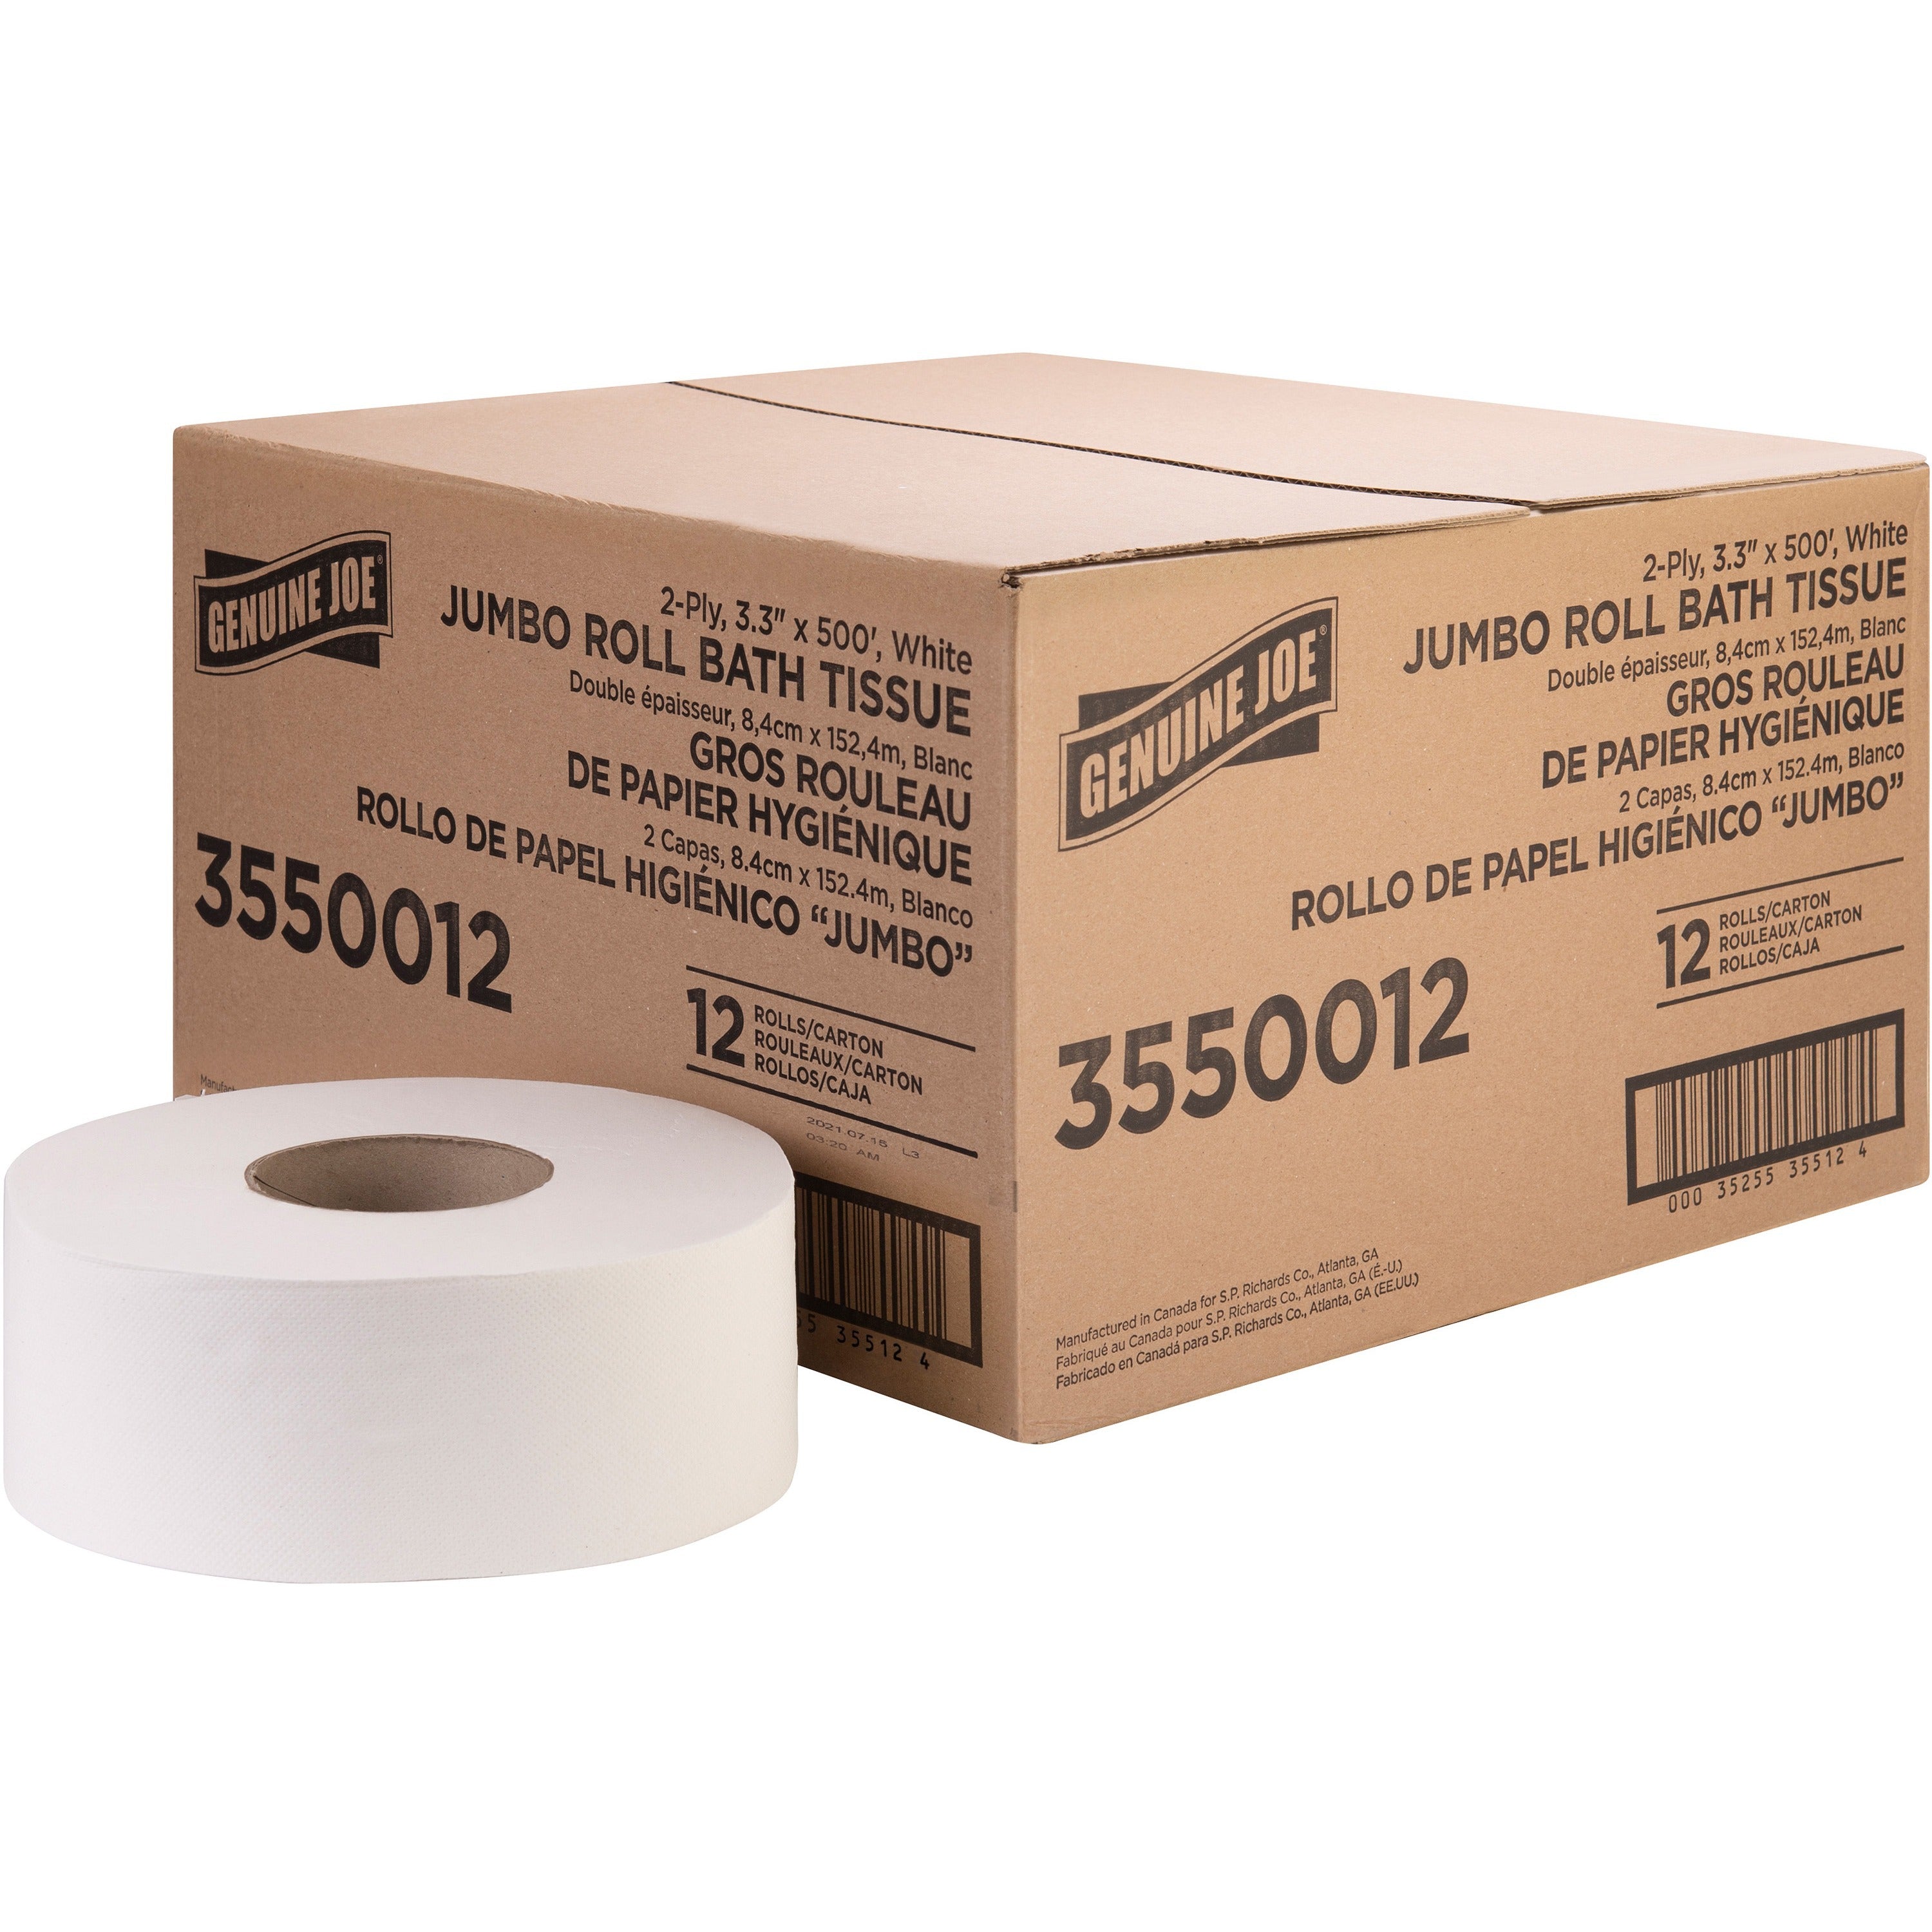 genuine-joe-jumbo-jr-dispenser-bath-tissue-roll-2-ply-330-x-500-ft-888-roll-diameter-white-fiber-sewer-safe-septic-safe-for-bathroom-12-carton_gjo3550012 - 1